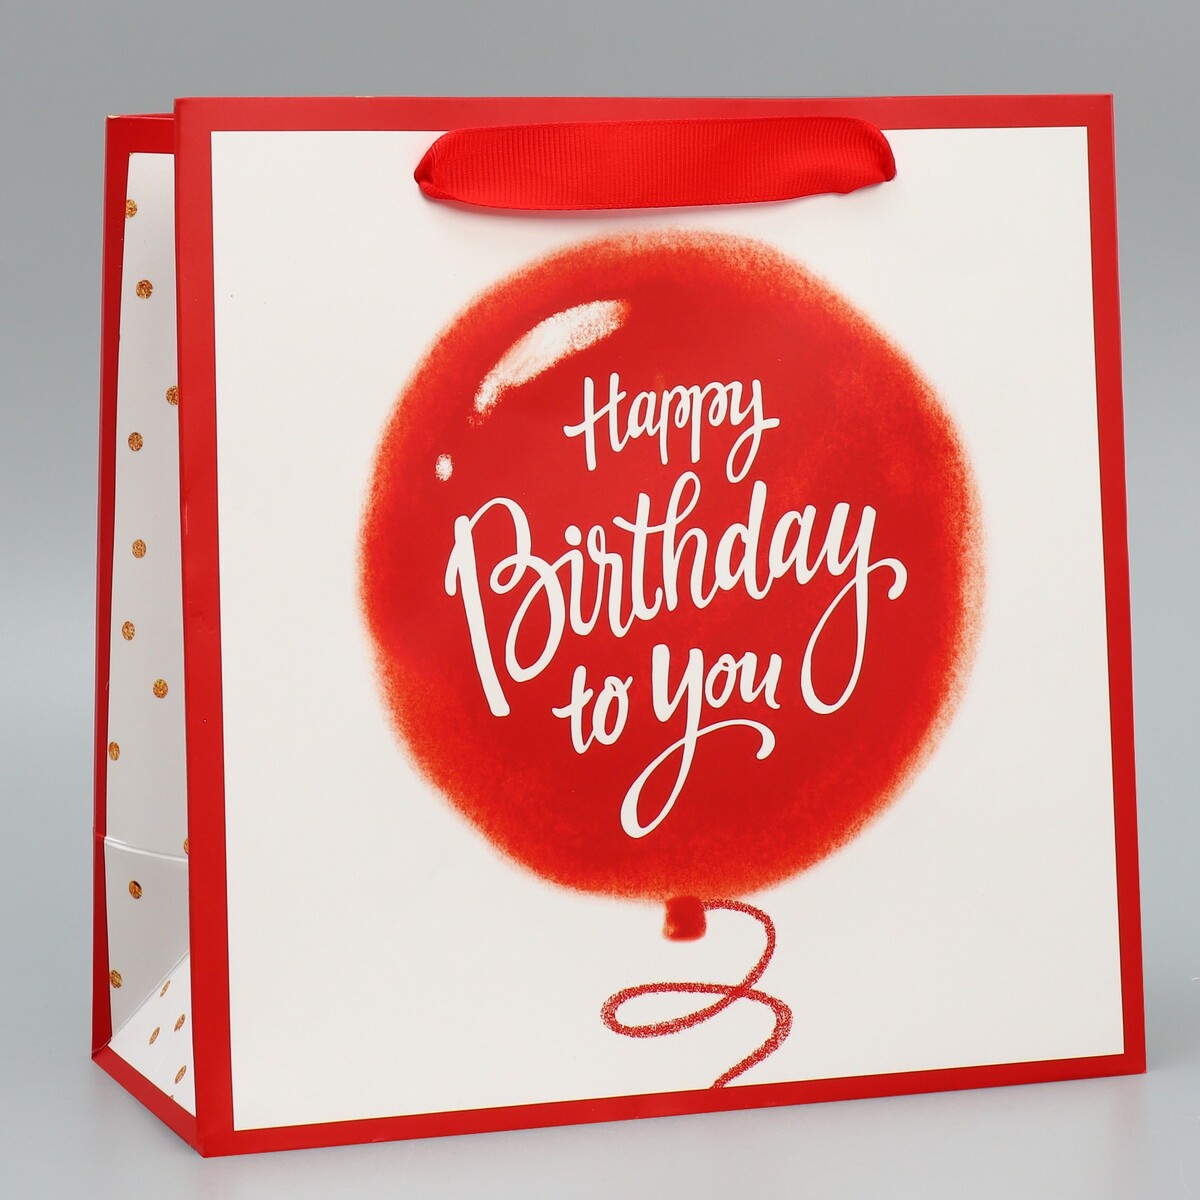 Пакет подарочный ламинированный квадратный, упаковка, пакет ламинированный квадратный с днем рождения 30 × 30 × 12 см